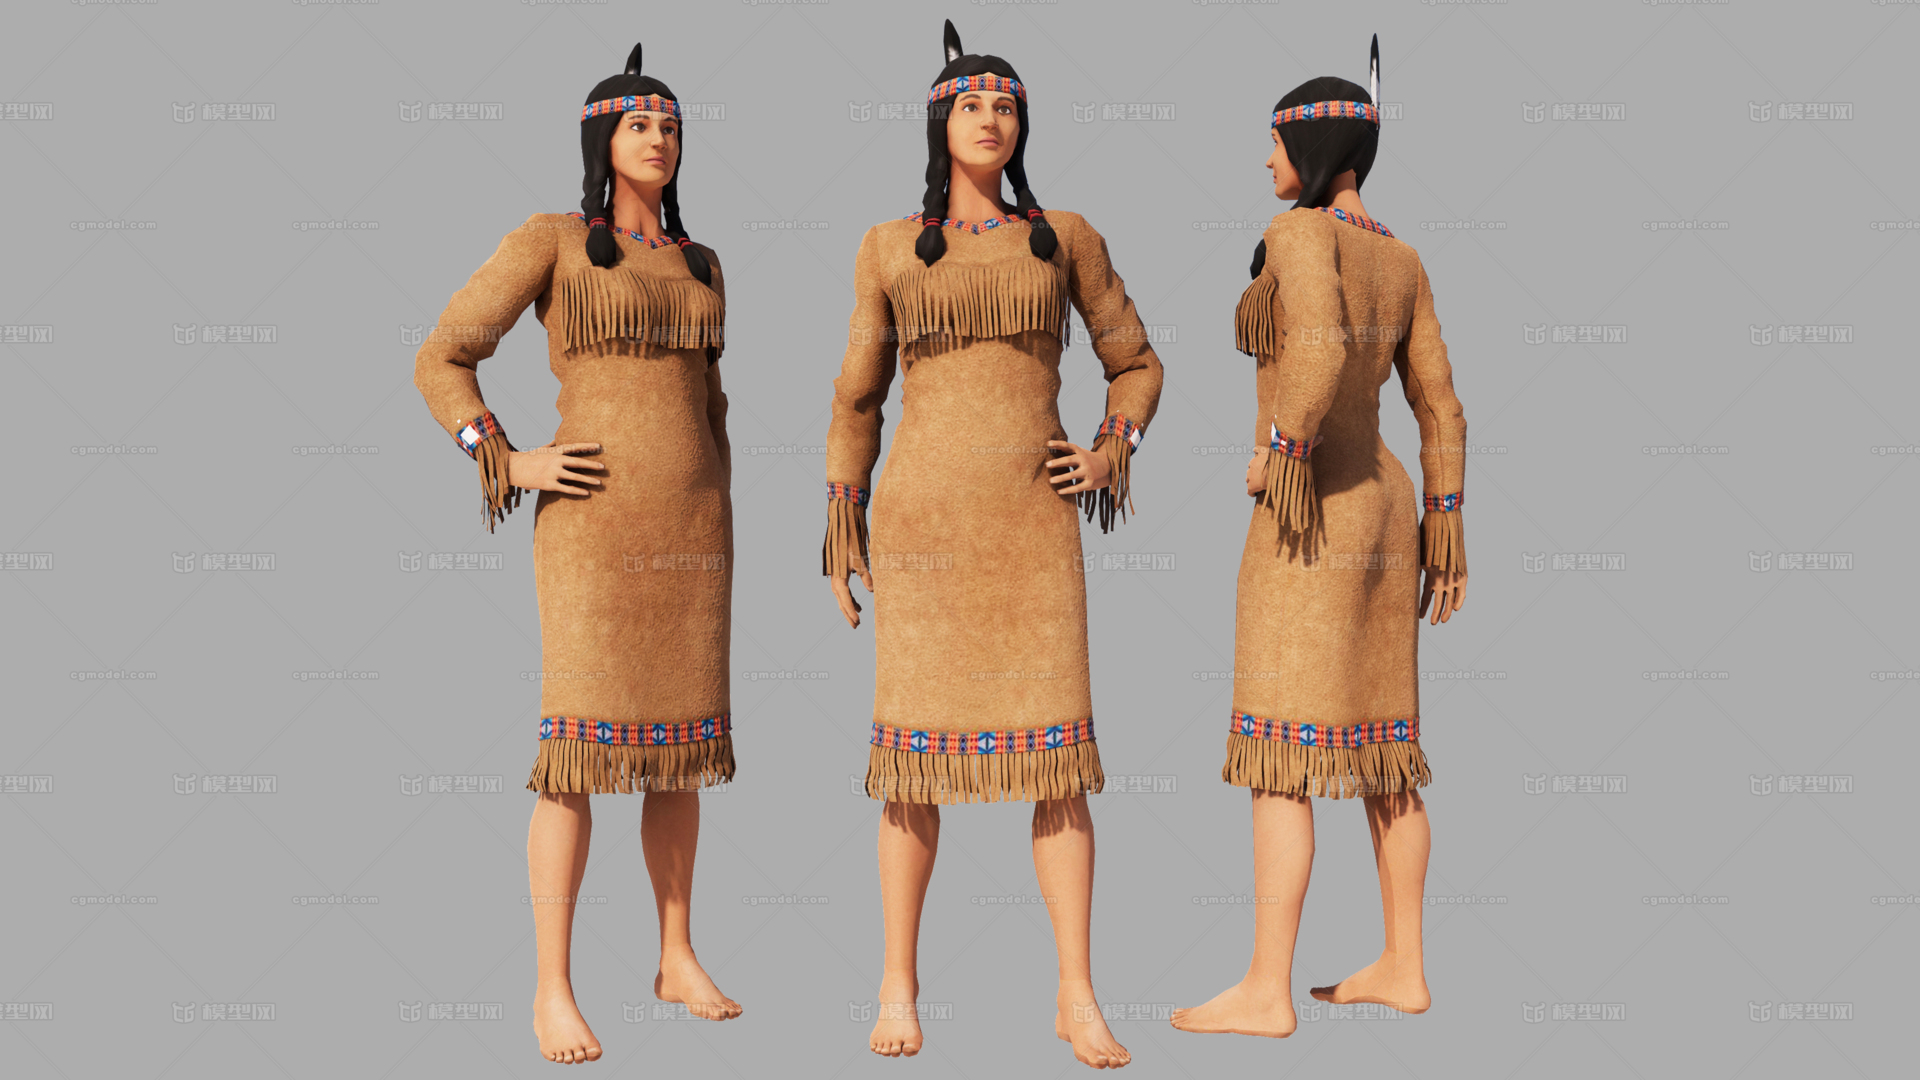 印第安人 印第安妇女 印第安女人 部落族人 牧民 游牧民族 野人 野蛮